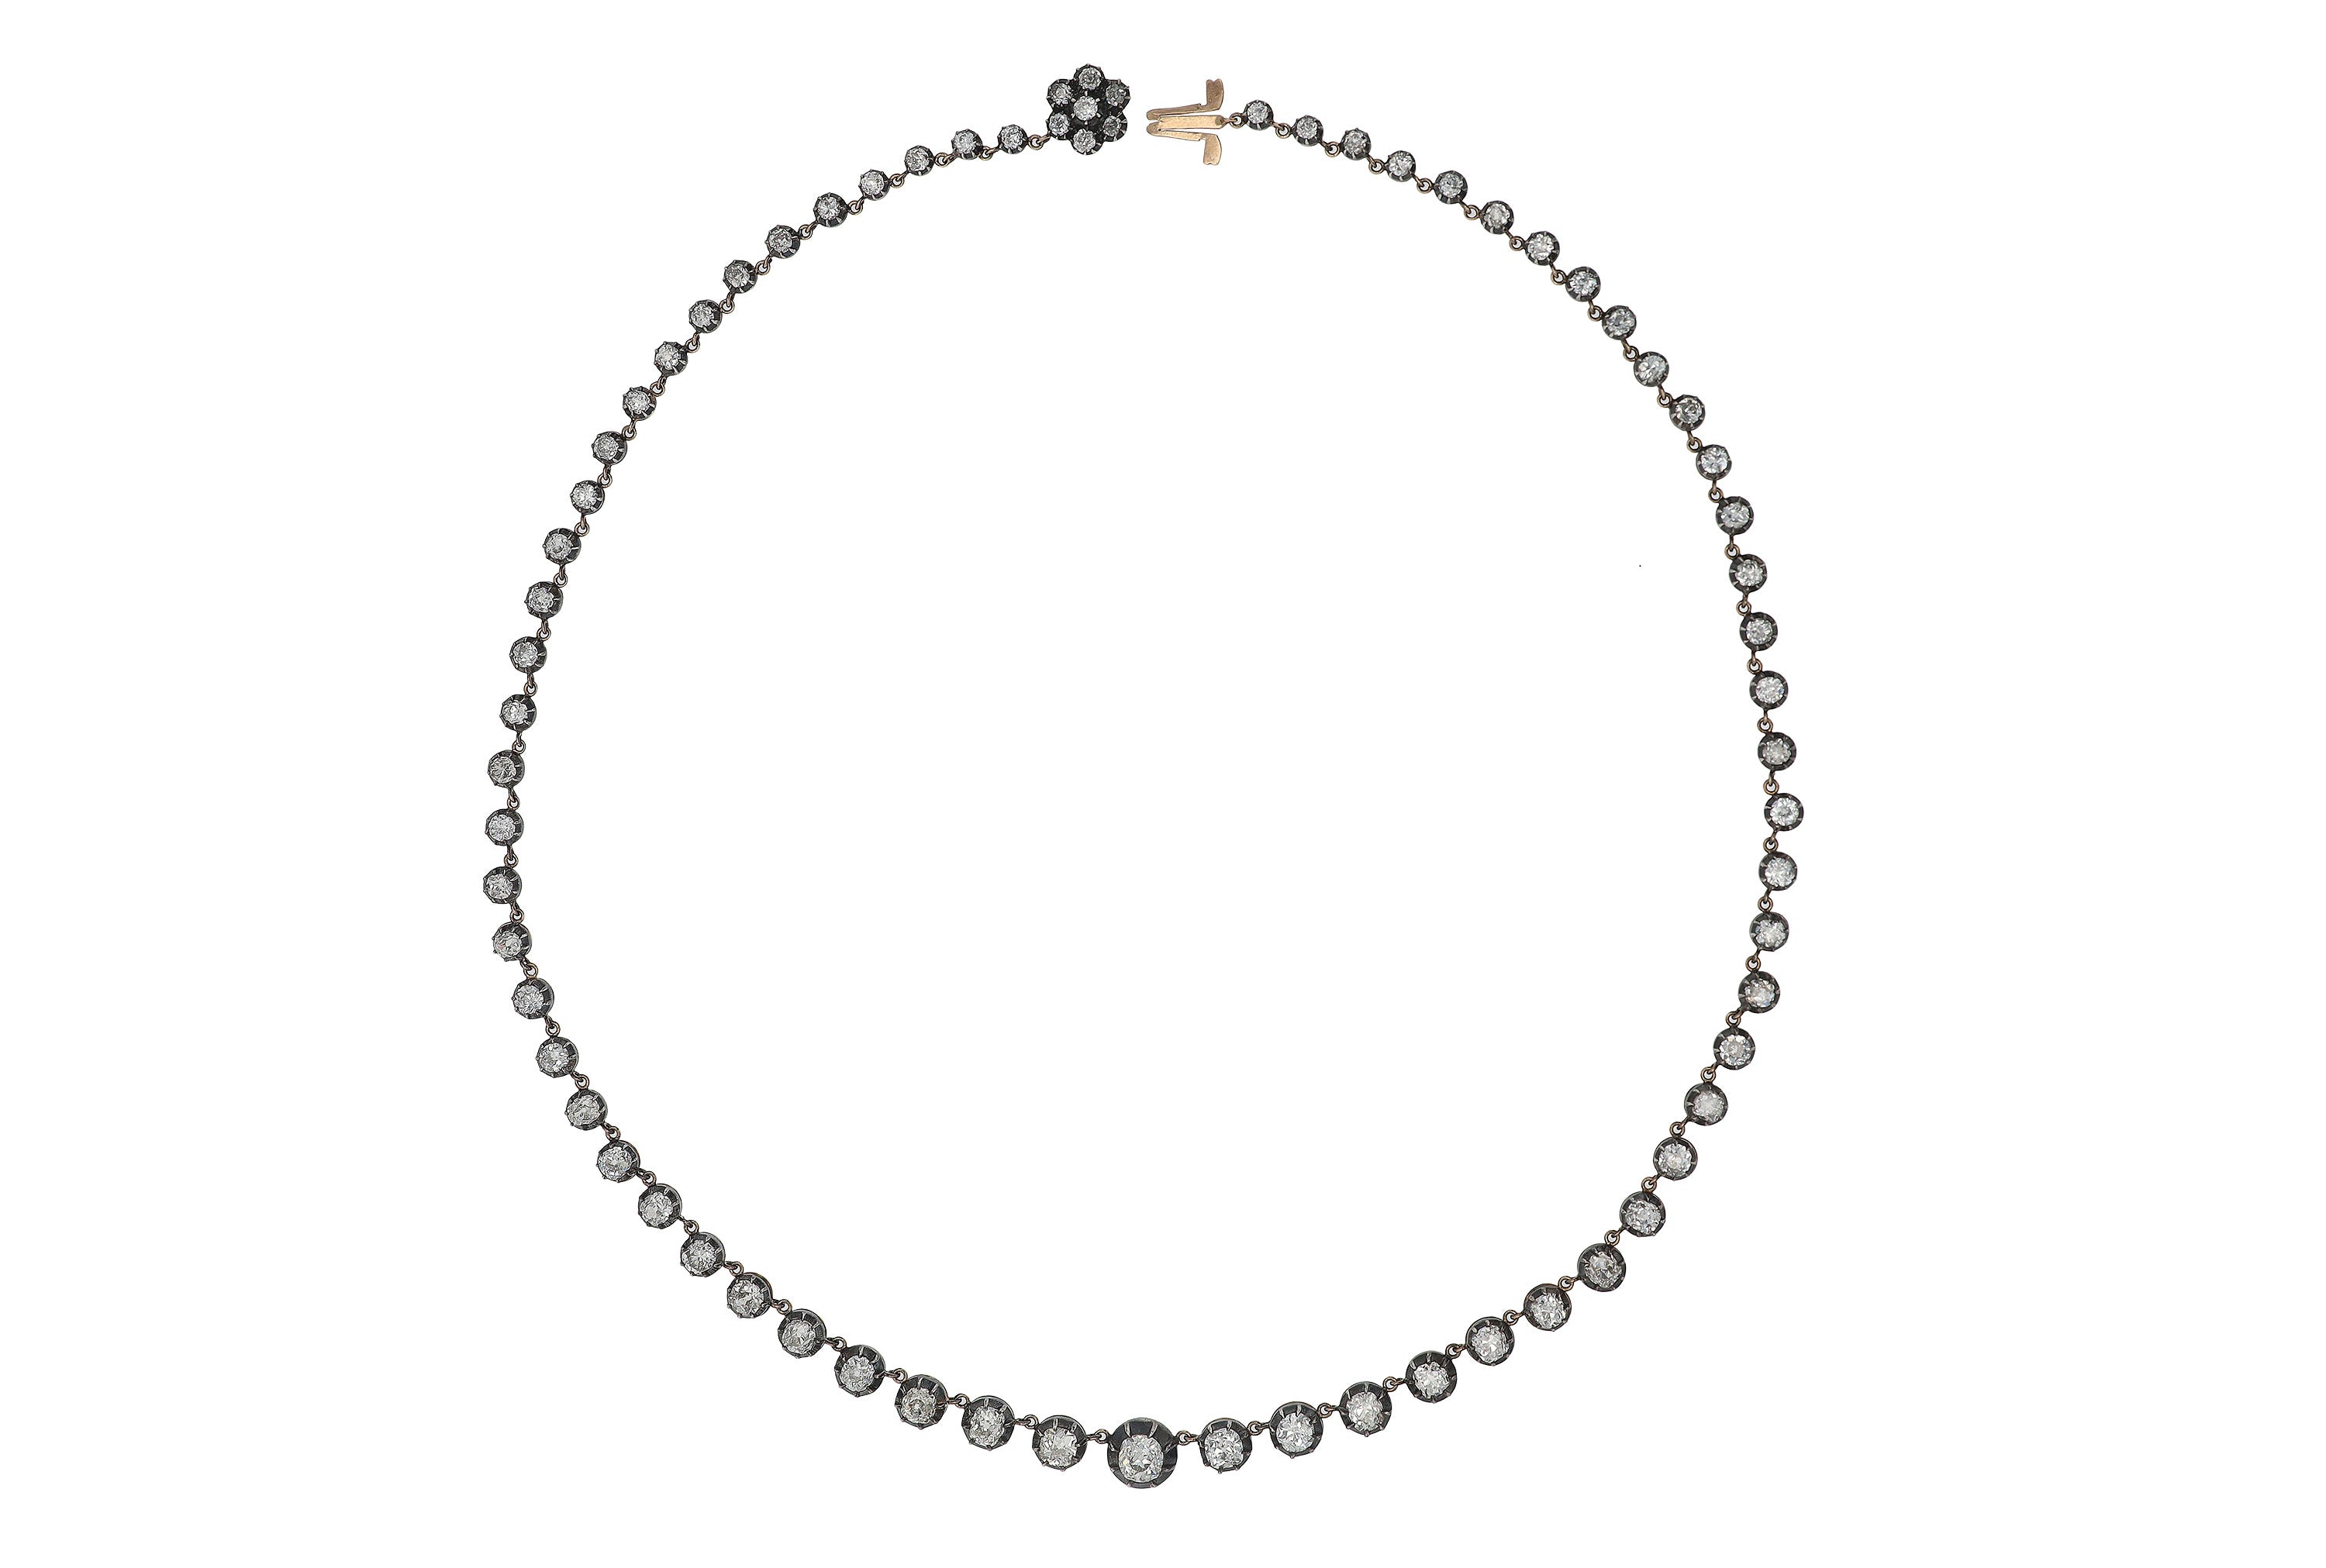 16 Carat Diamond Necklace